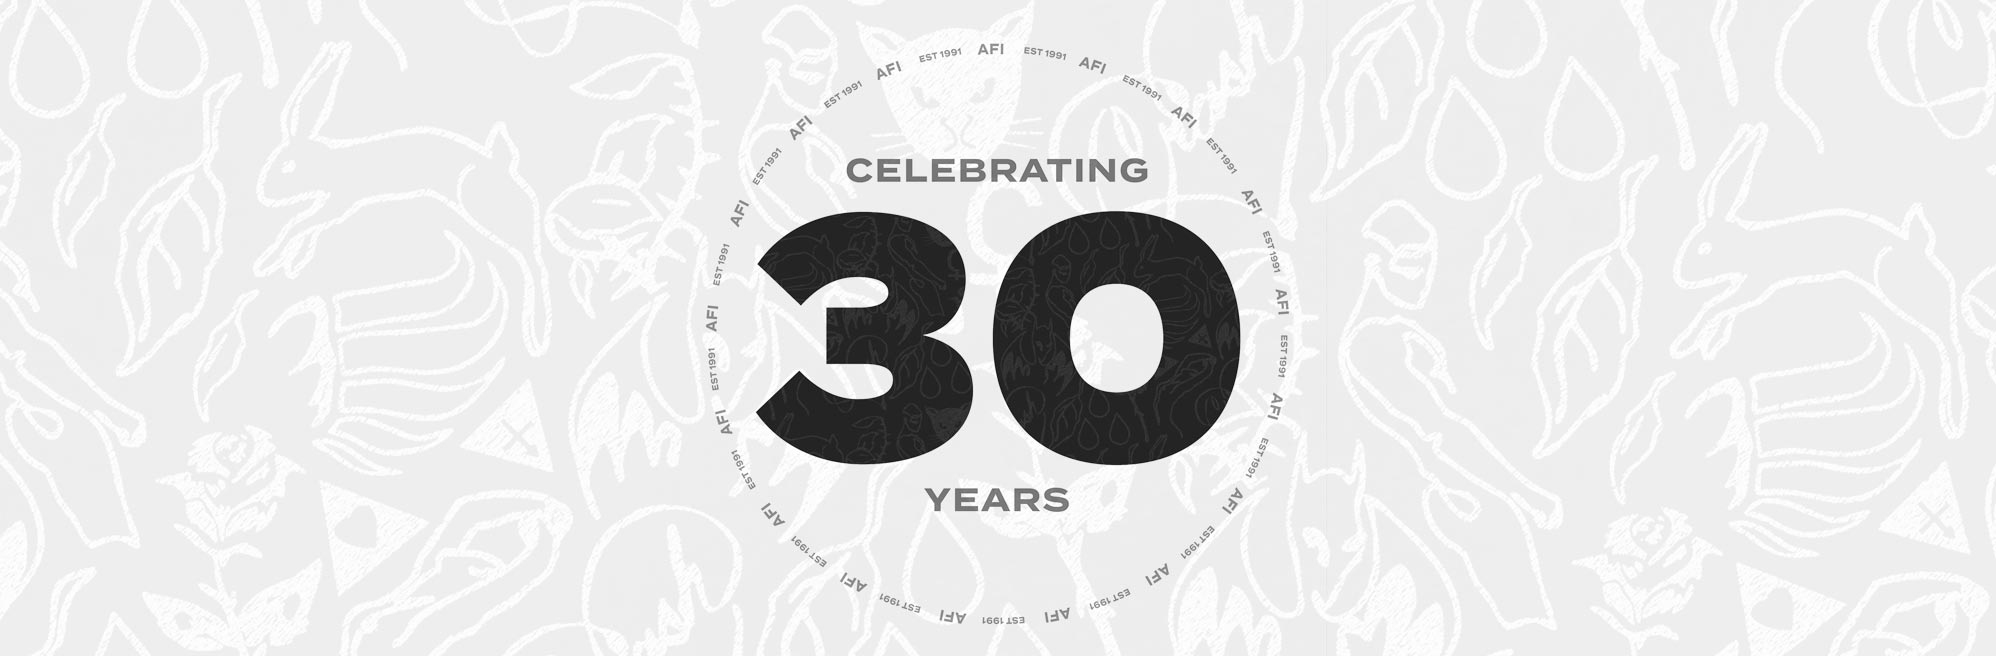 Celebrating 30 Years Of AFI